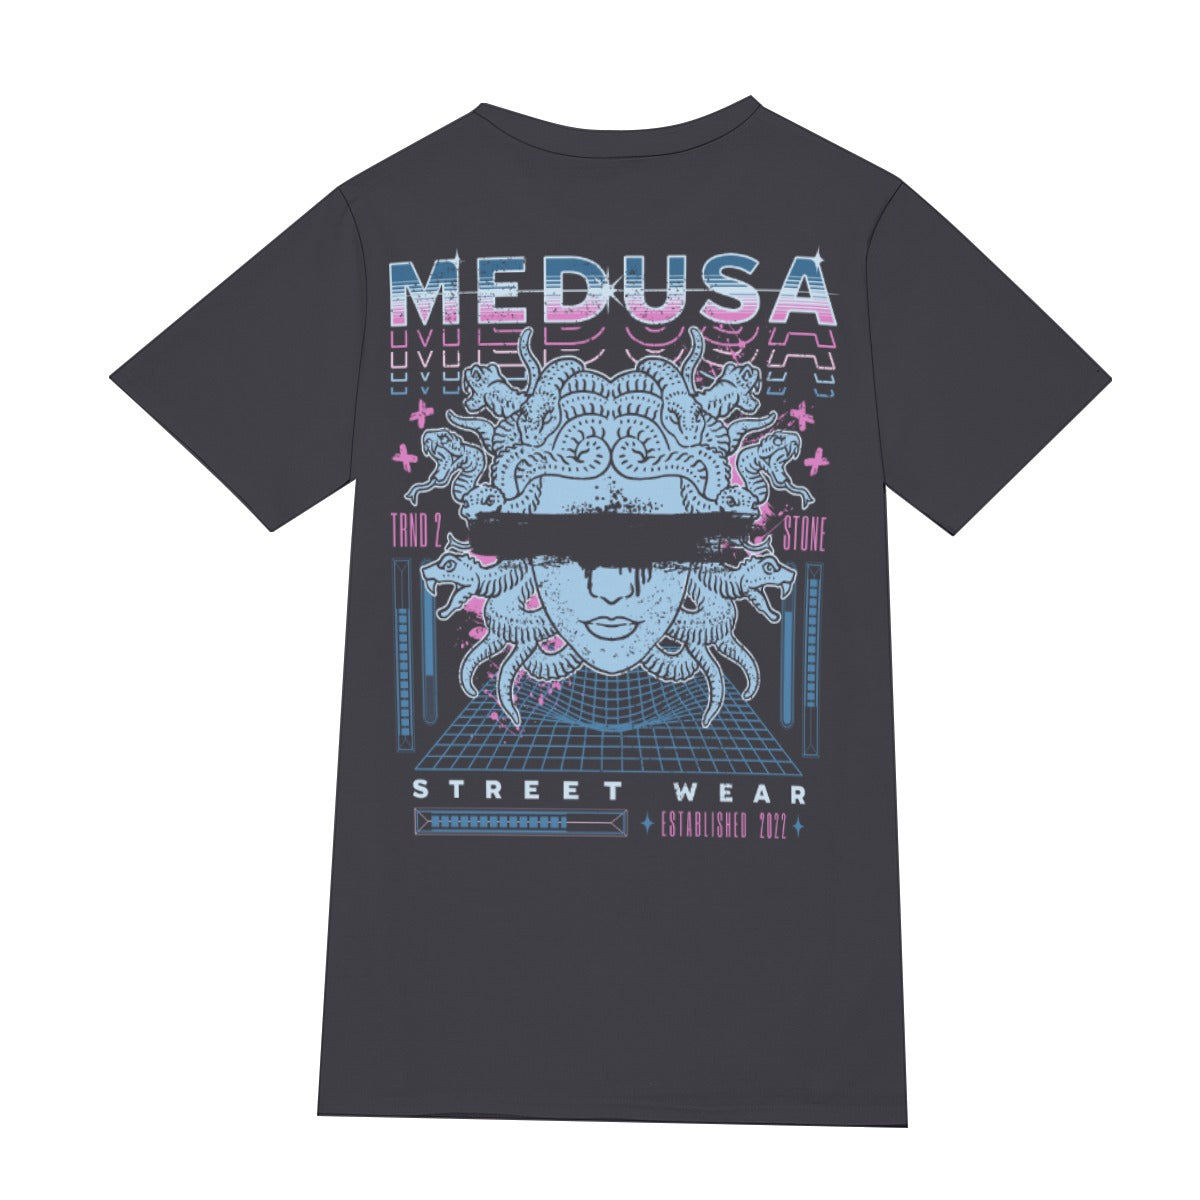 Medusa men's t-shirt, Men's Premium Cotton Tee, Best Long Sleeve Tees, Premium Cotton, shopic, shopic store, print tee, cotton tee, premium cotton